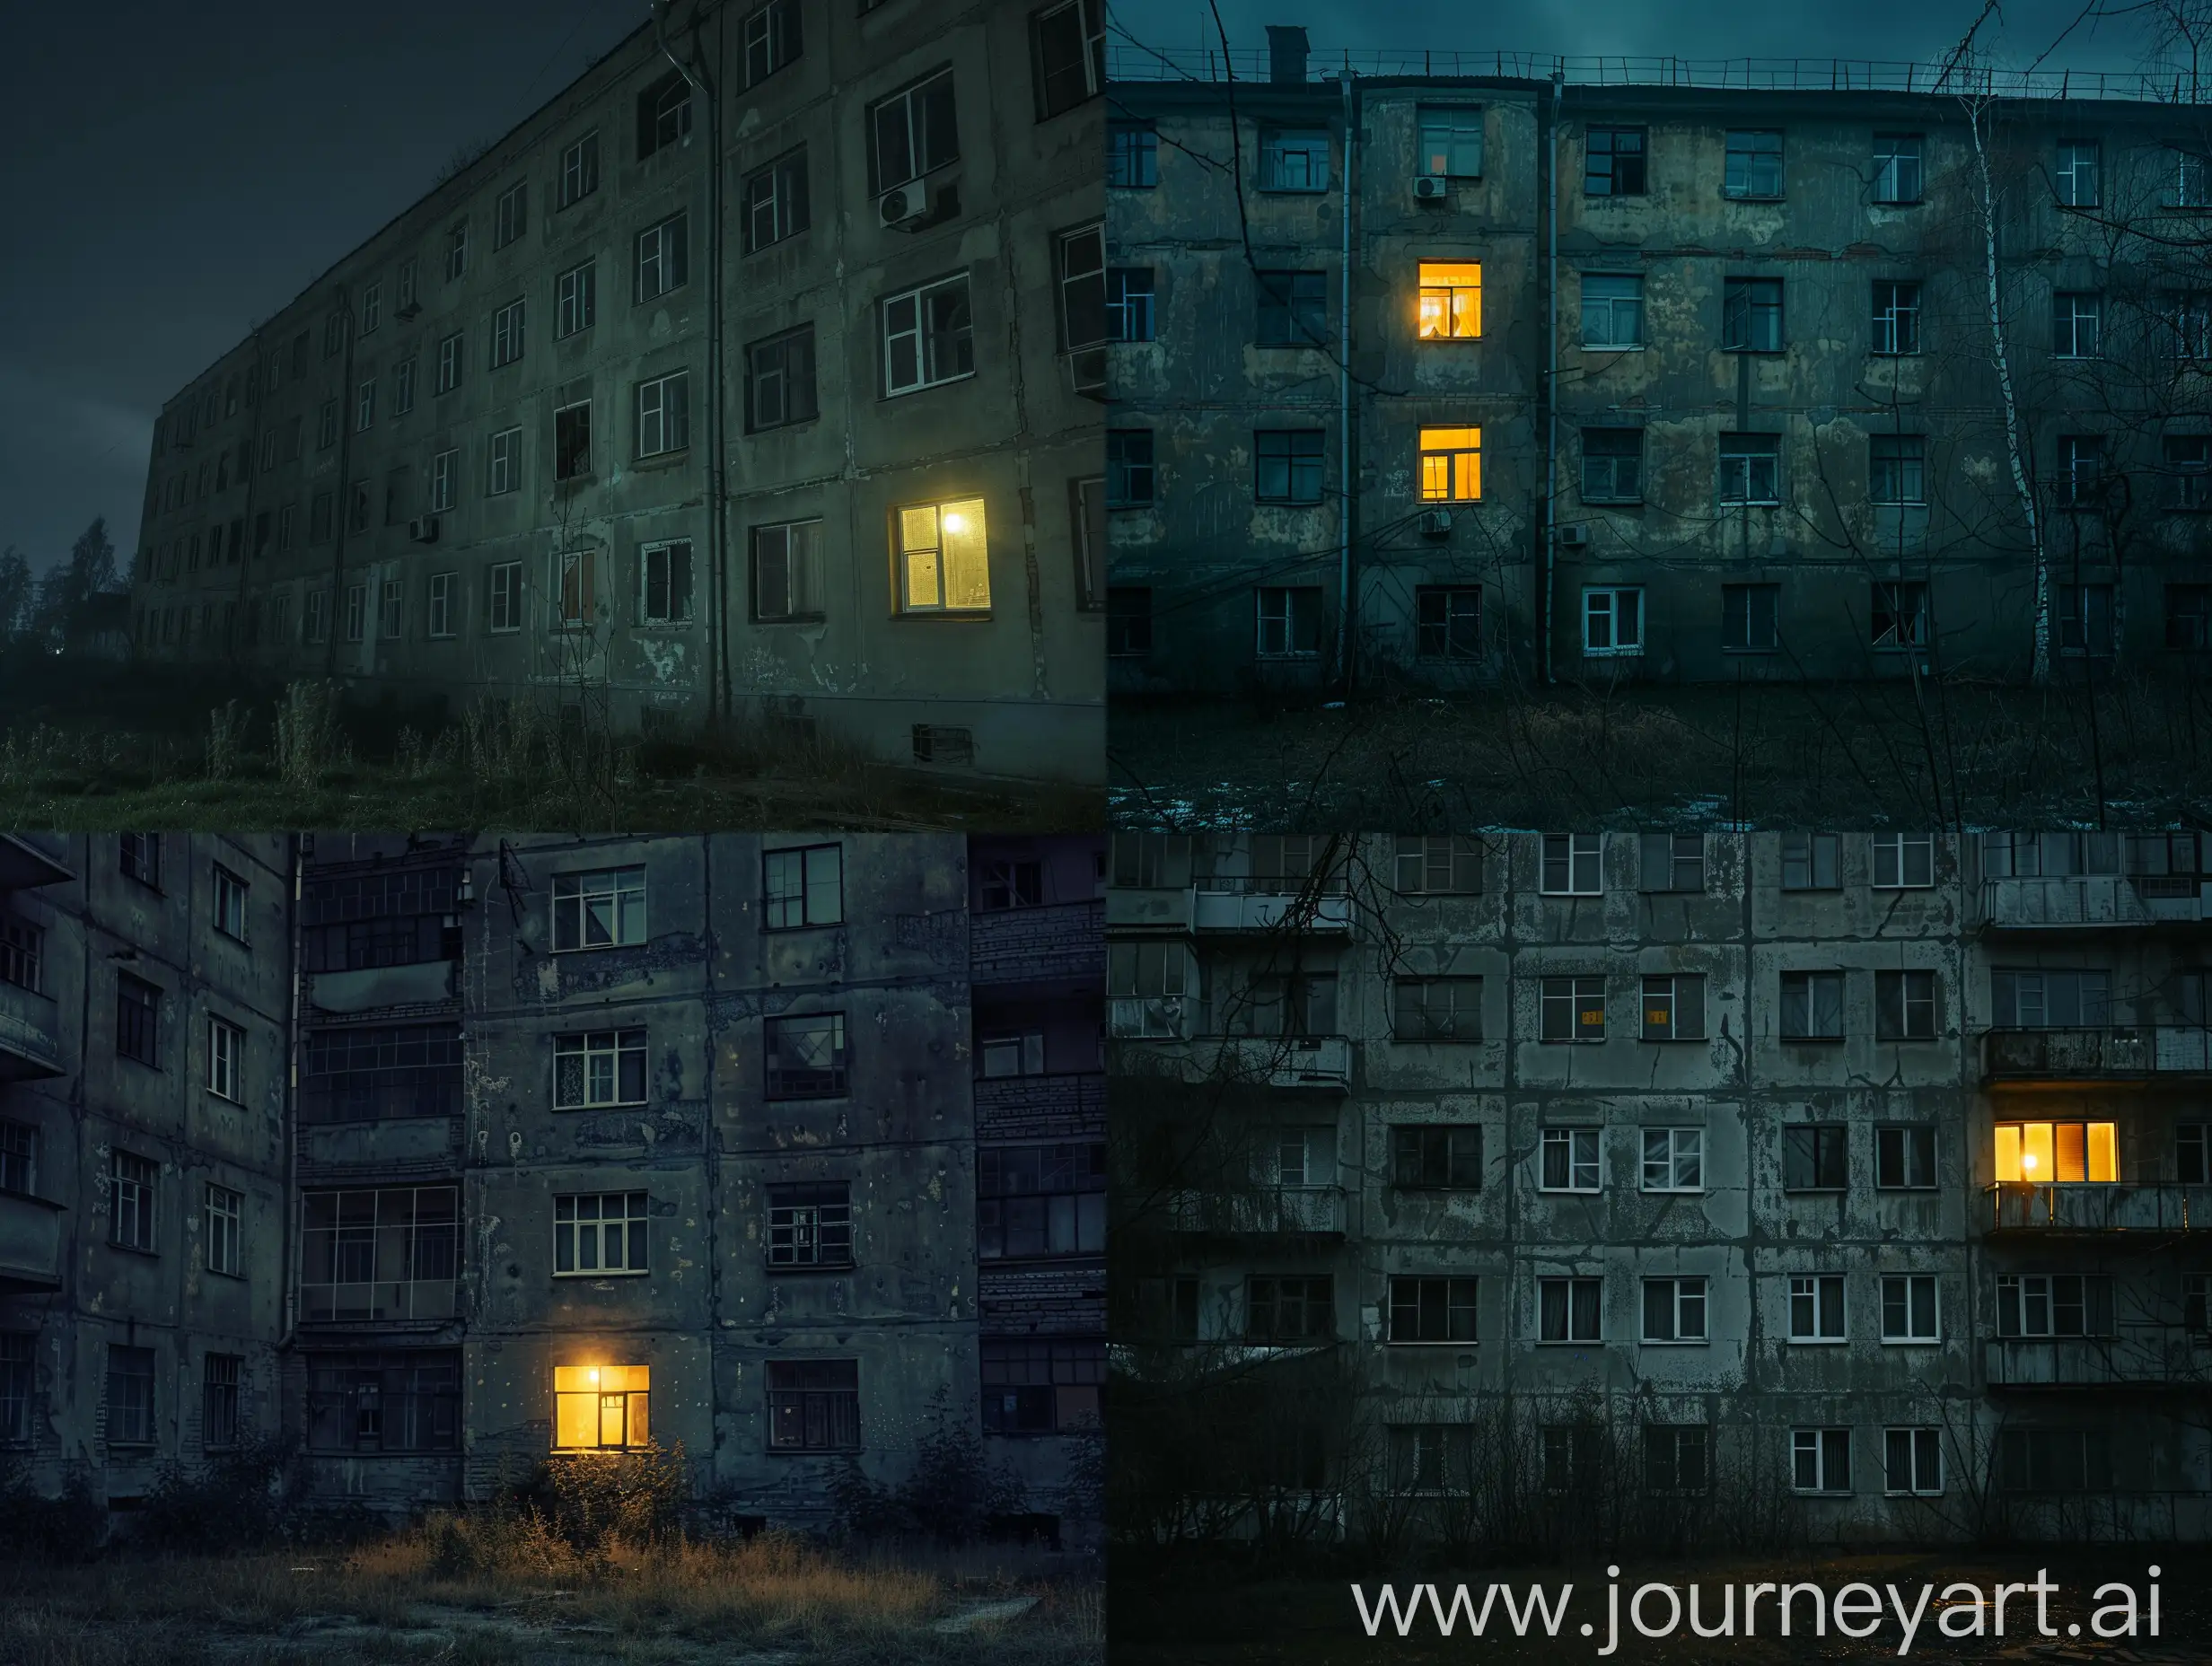 Большой российский старый панельный многоквартирный дом,  только лицевая сторона, темный, ночью, мрачный, страшный, свет только в одном окне